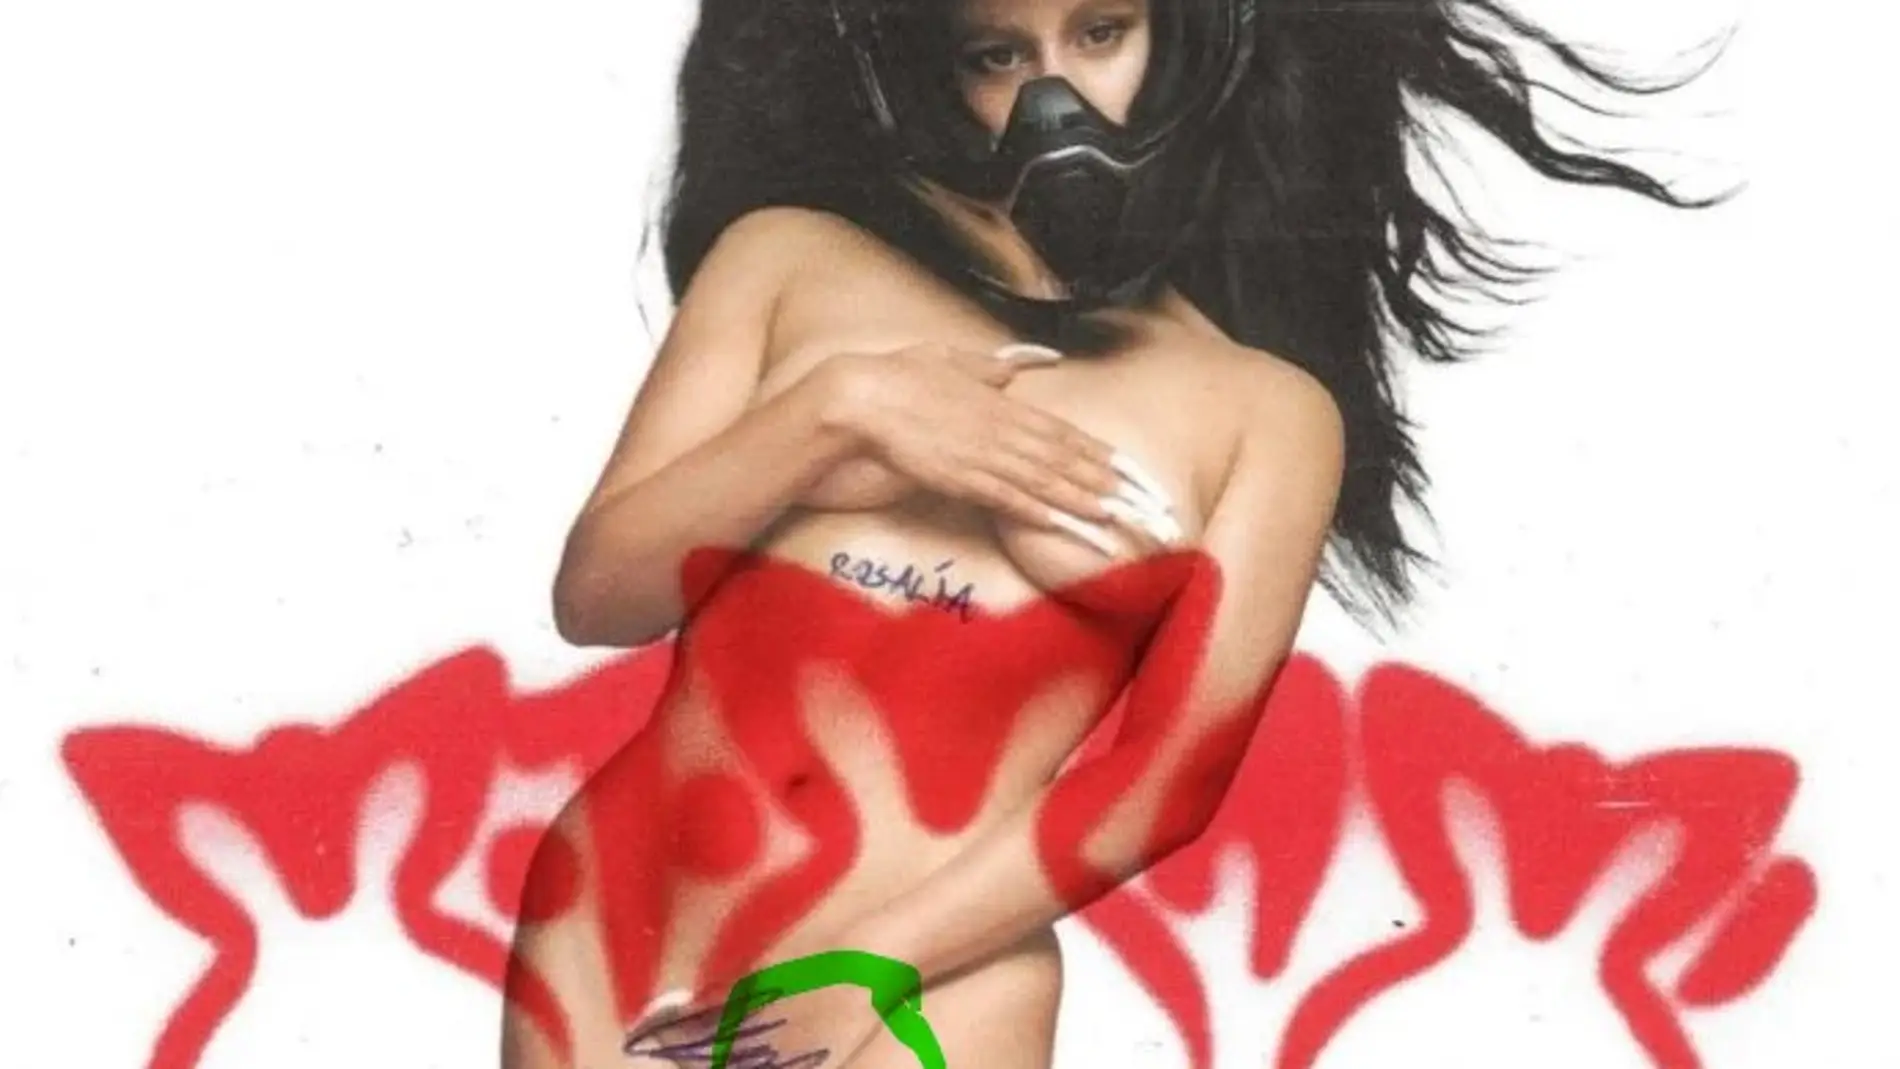 Rosalía explica el significado del llamativo tatuaje de la portada de la portada de 'MOTOMAMI'